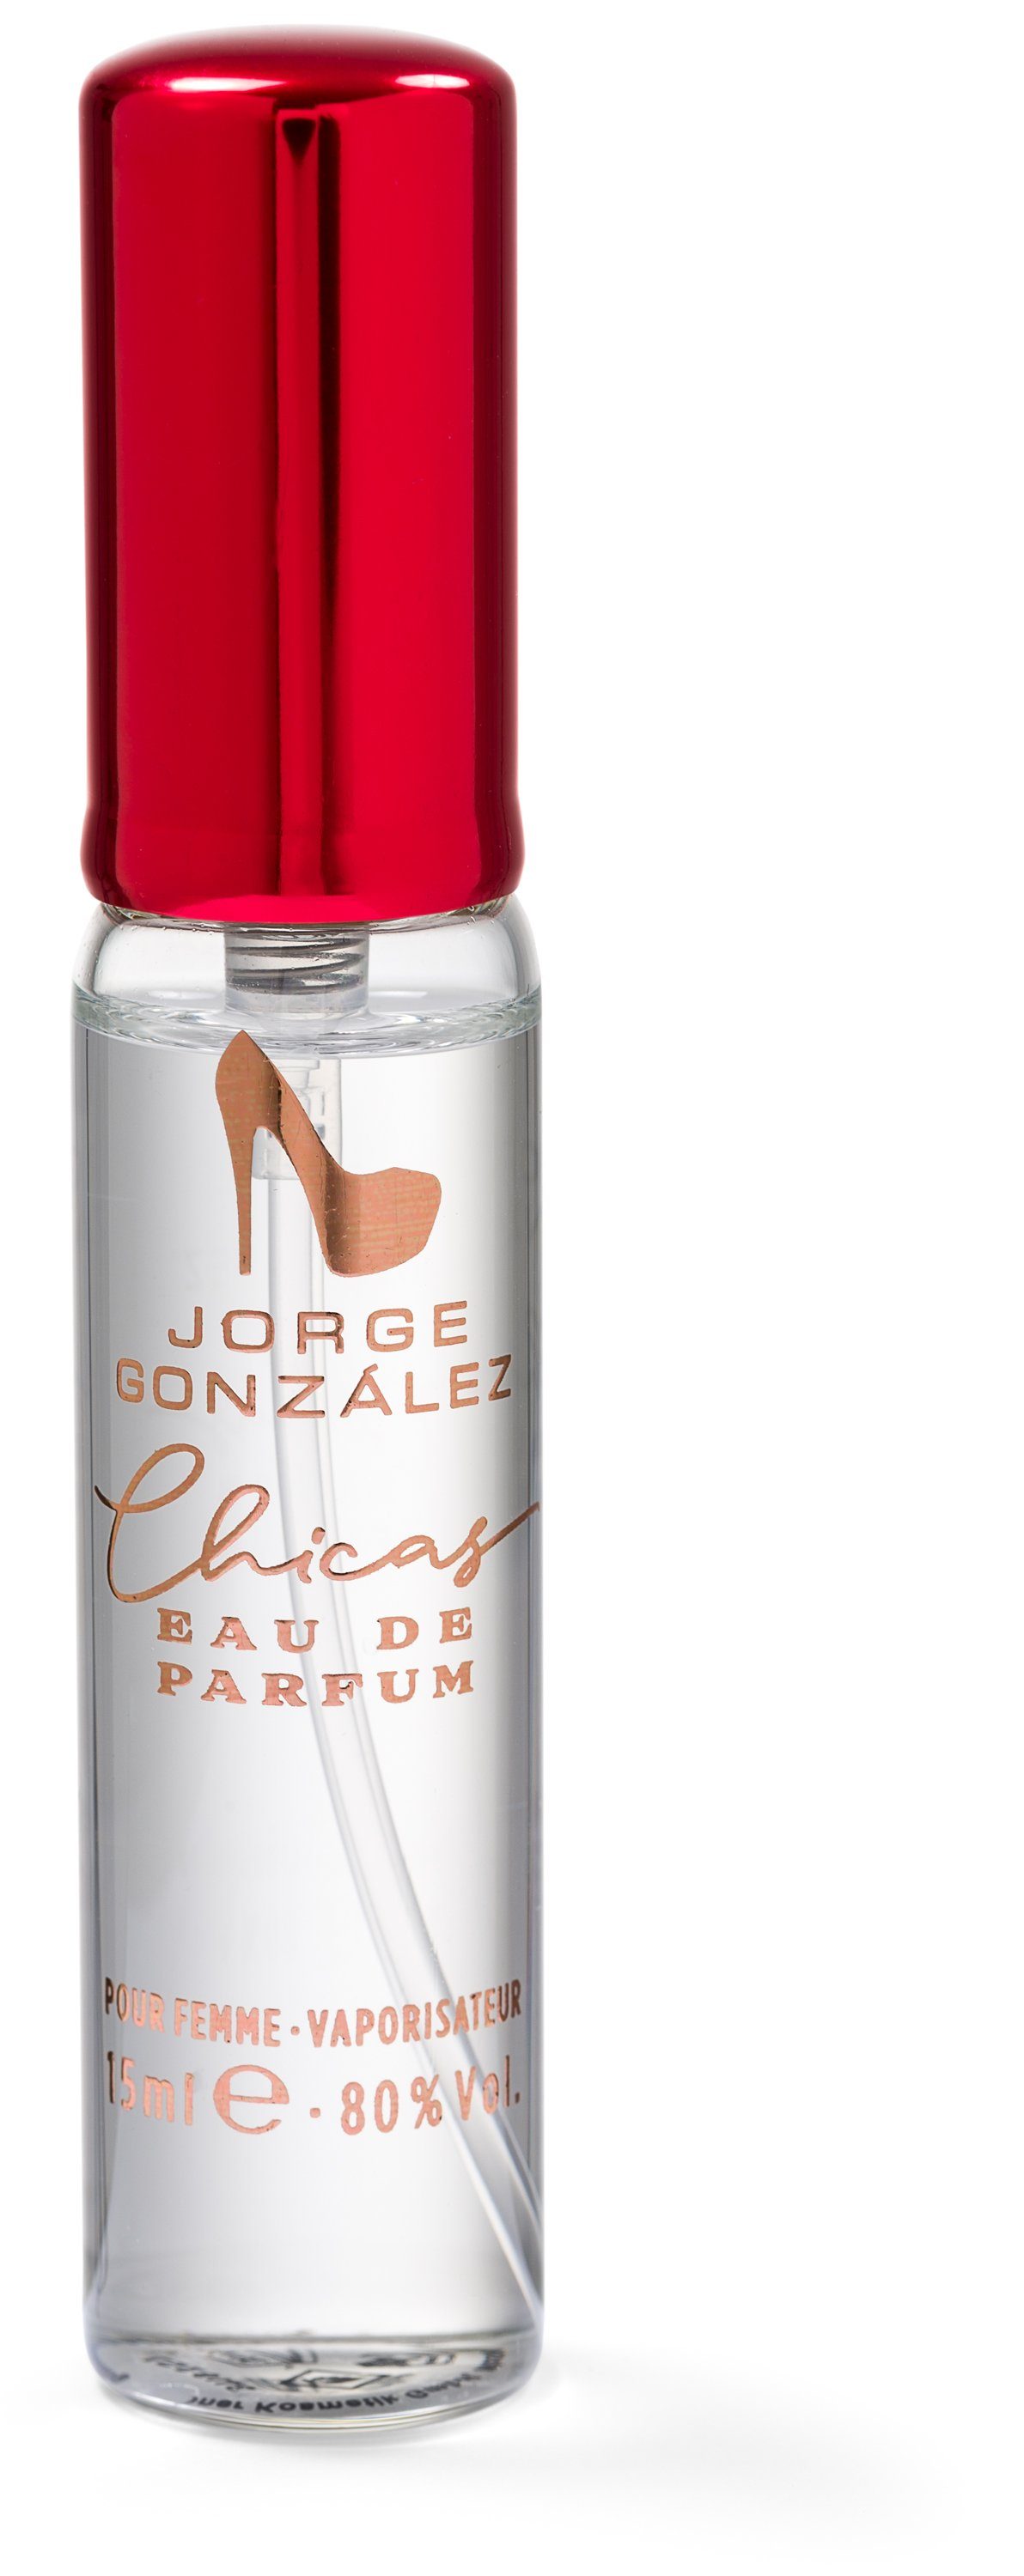 JORGE GONZÁLEZ Eau de Parfum, Frauen Damenduft, EDICIÓN Duft Eau 100+15ml, de für CHICAS Parfum